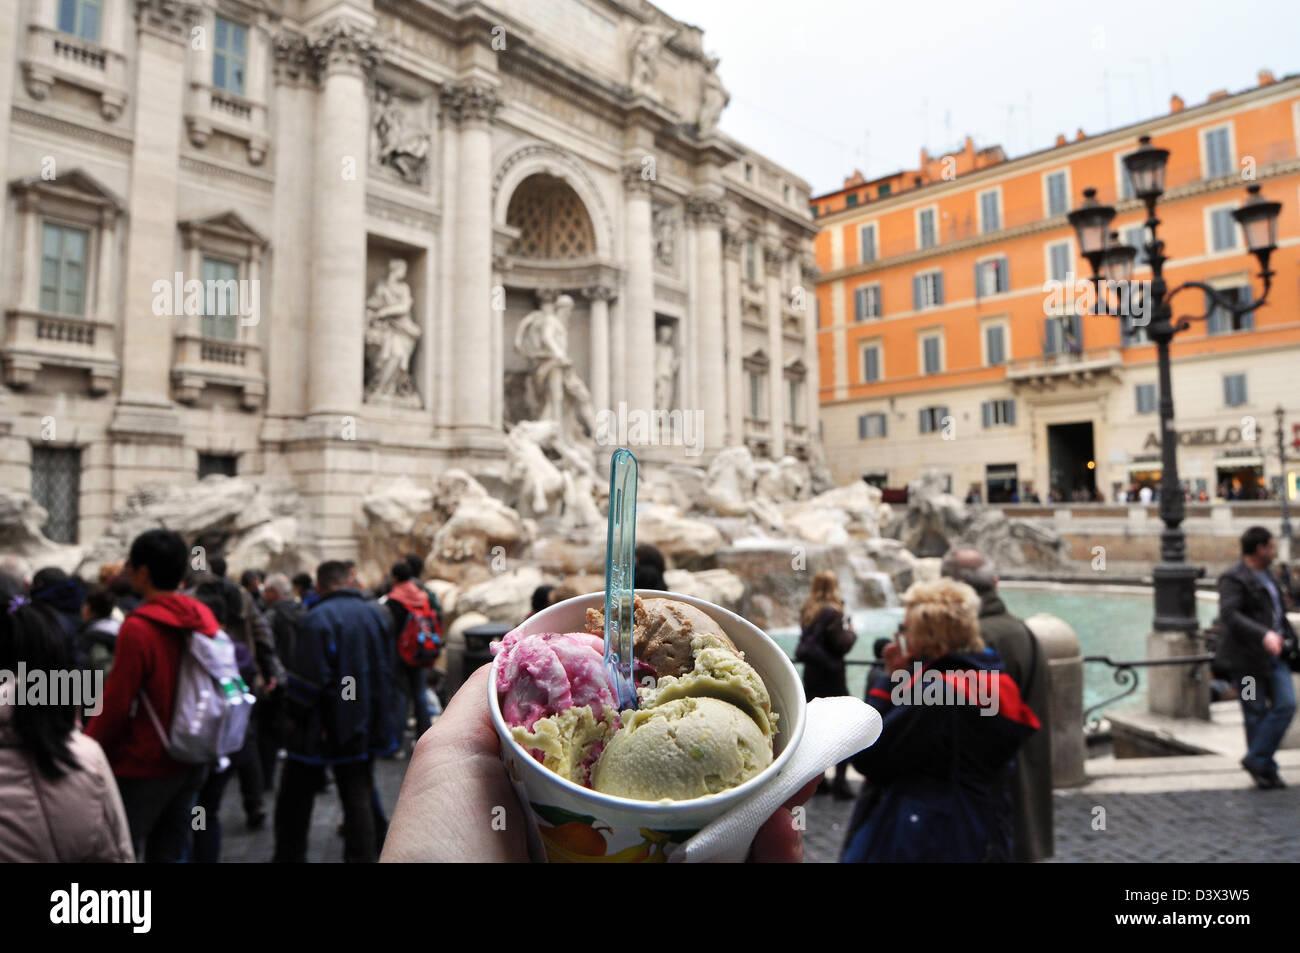 Ice cream, Trevi Fountain, Rome, Italy Stock Photo